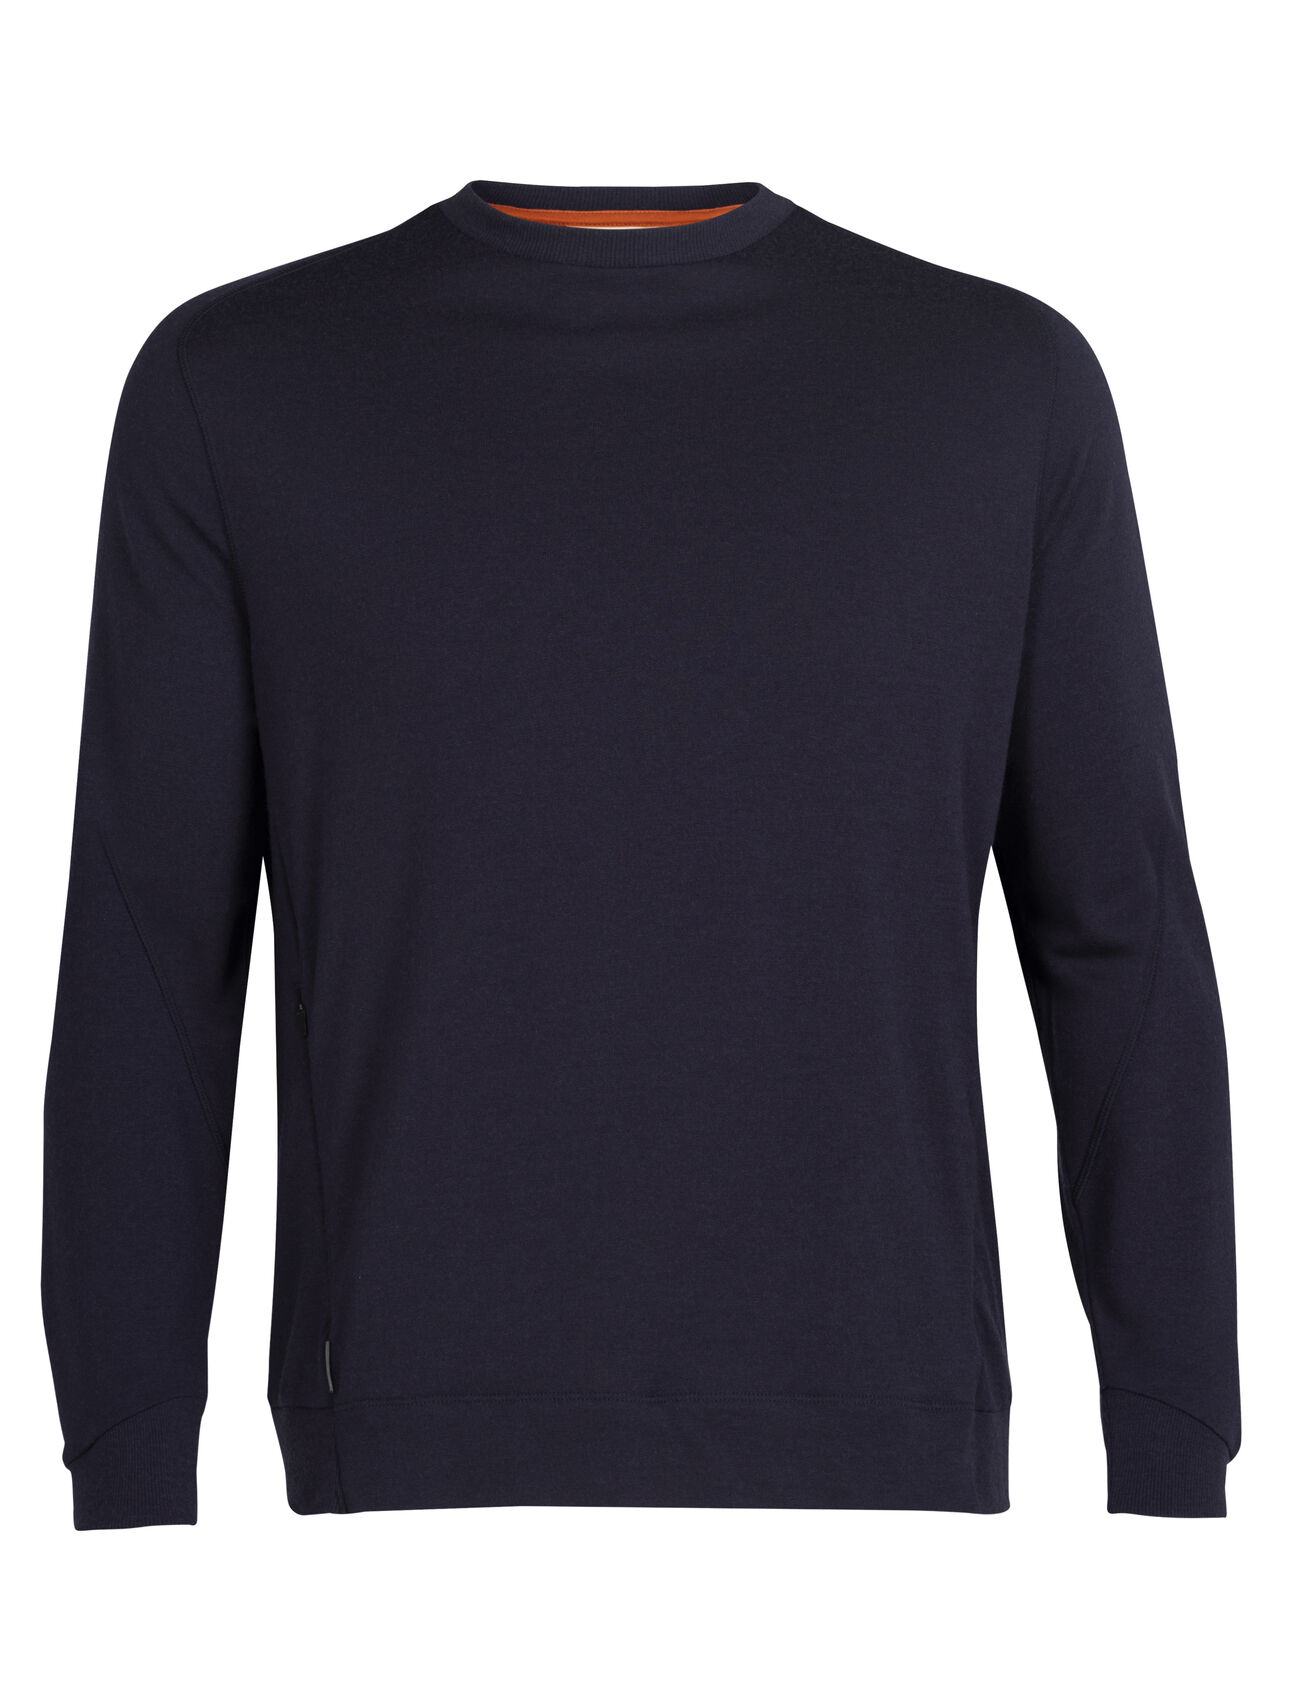 Herr Merinotröja Merino sweatshirt är en klassisk tröja som är tillverkad av frottématerial i 100% merinoull för att kunna kombinera maximal komfort med en modern look.